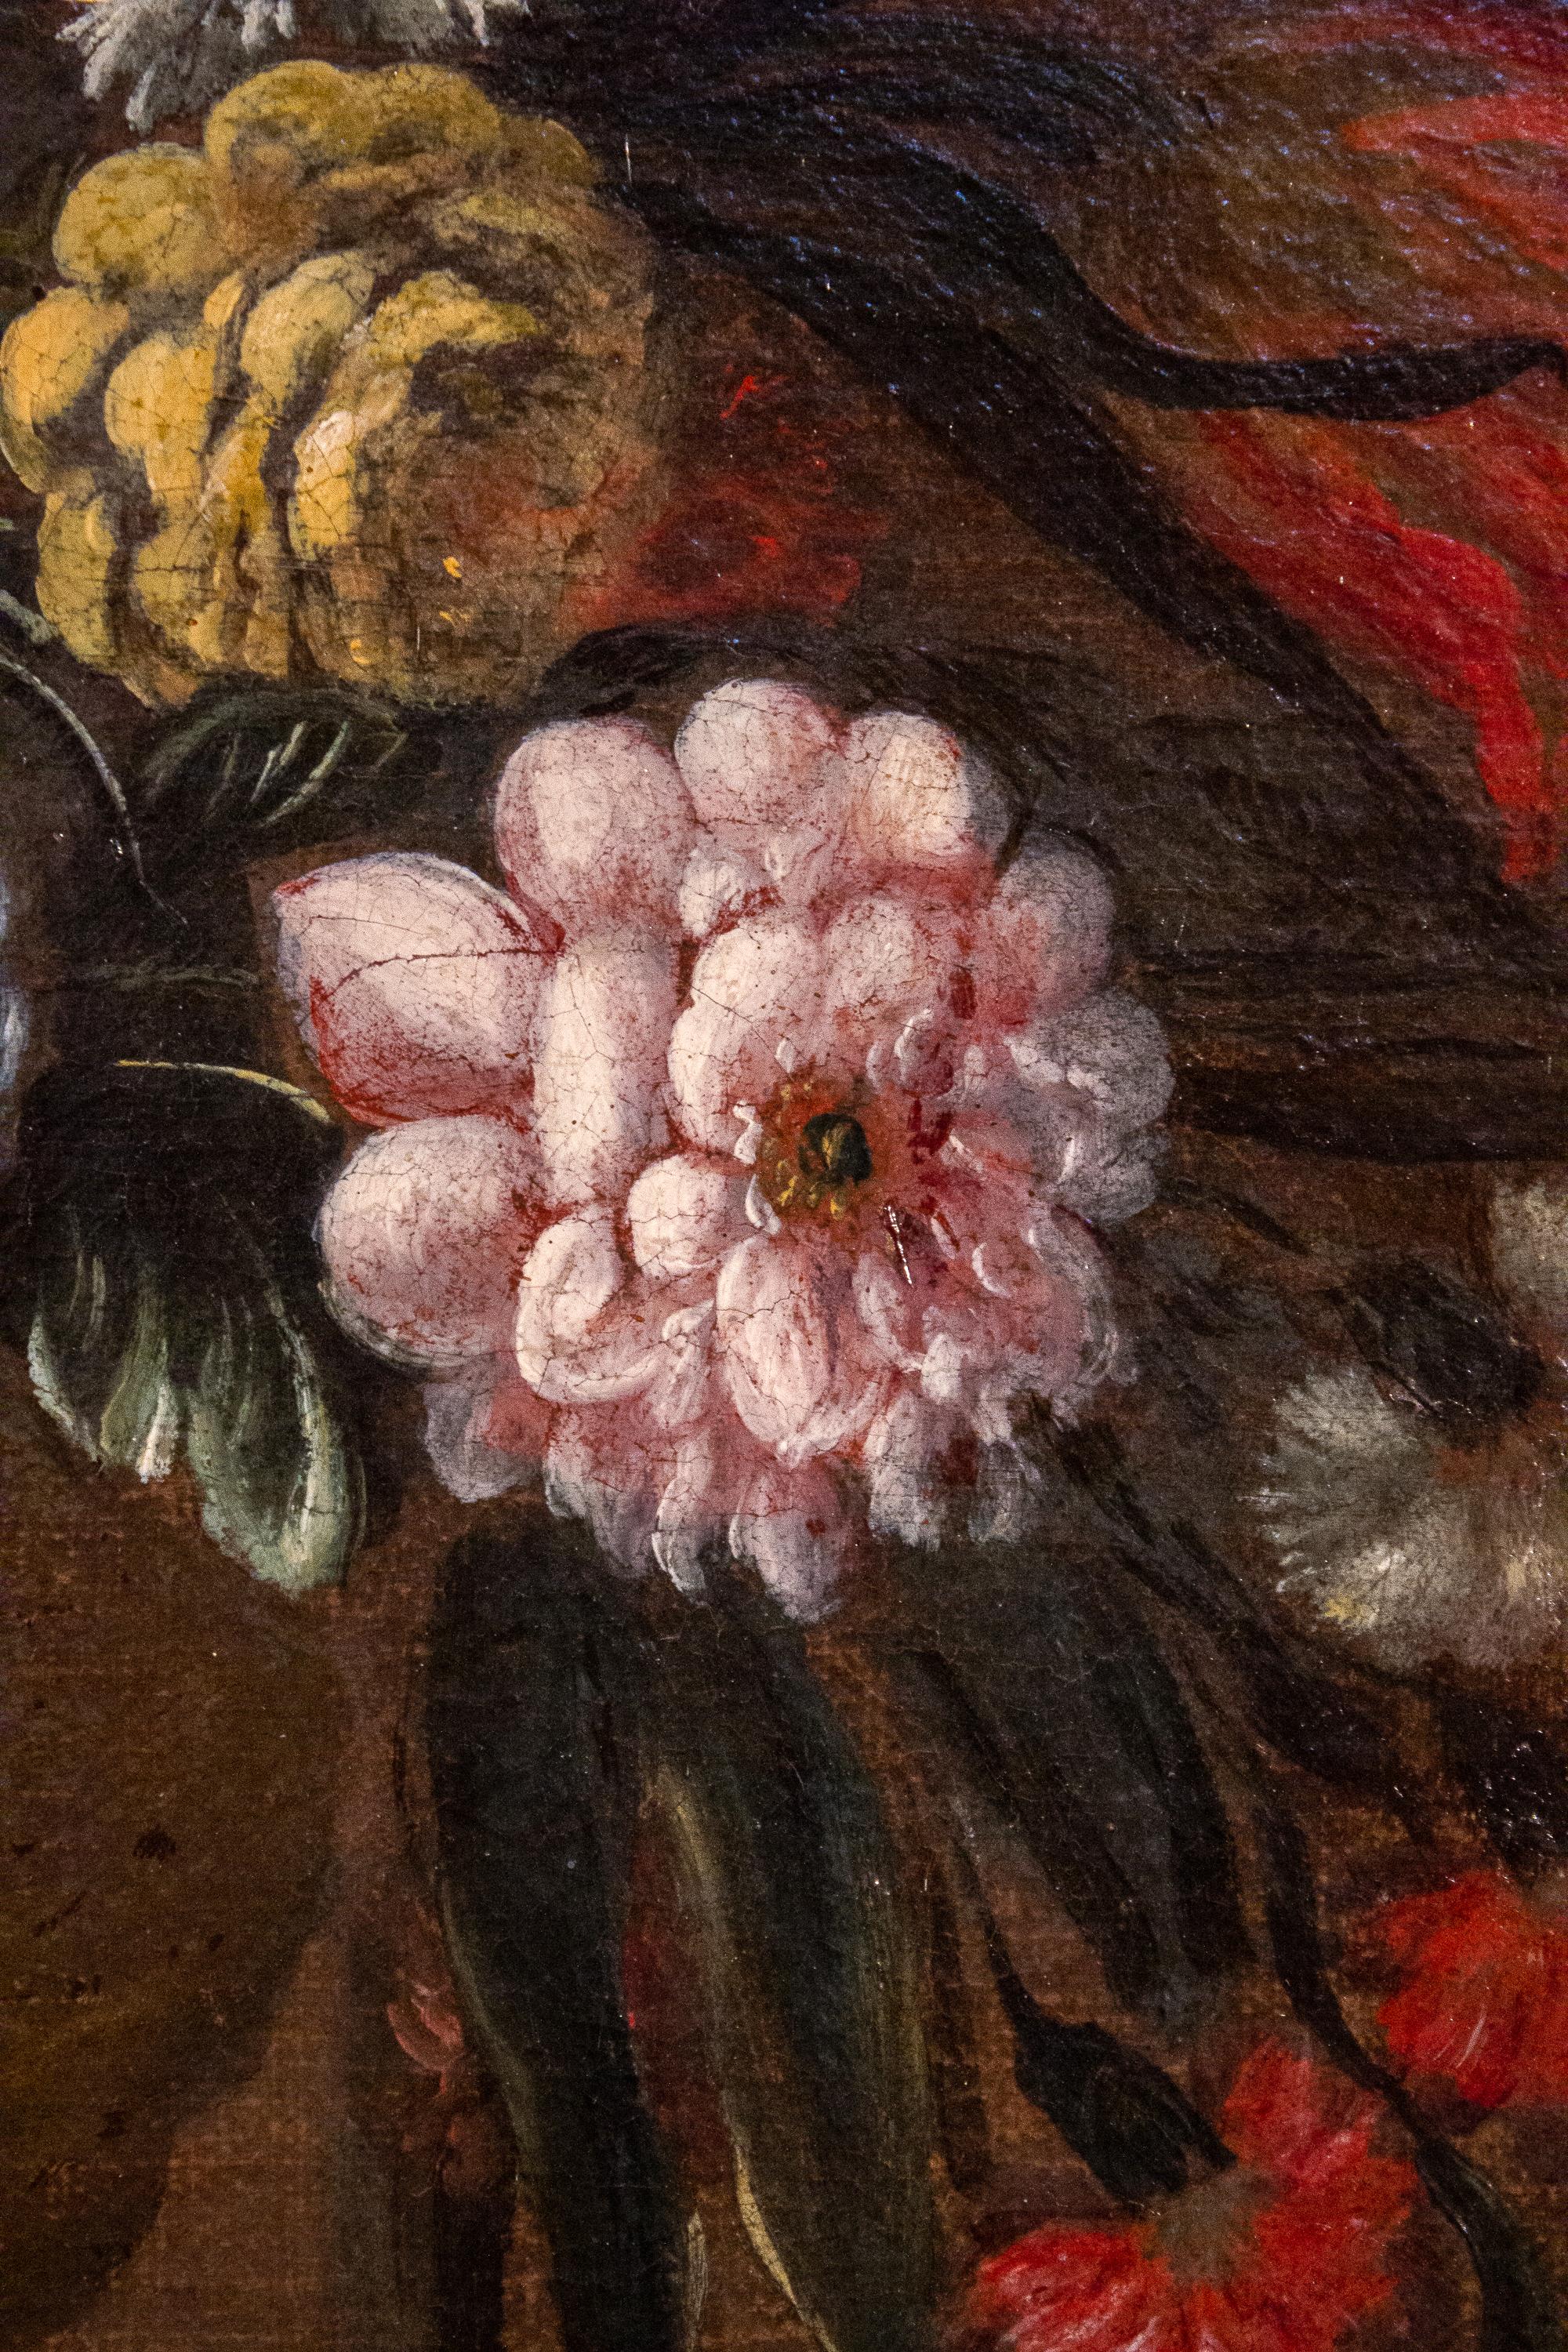 Paire de natures mortes italiennes très décoratives représentant des fleurs avec des vases et des personnages classiques.
XVIIIe siècle, huile sur toile,  avec les cadres d'origine en bois doré. 
Cette paire est un excellent exemple de